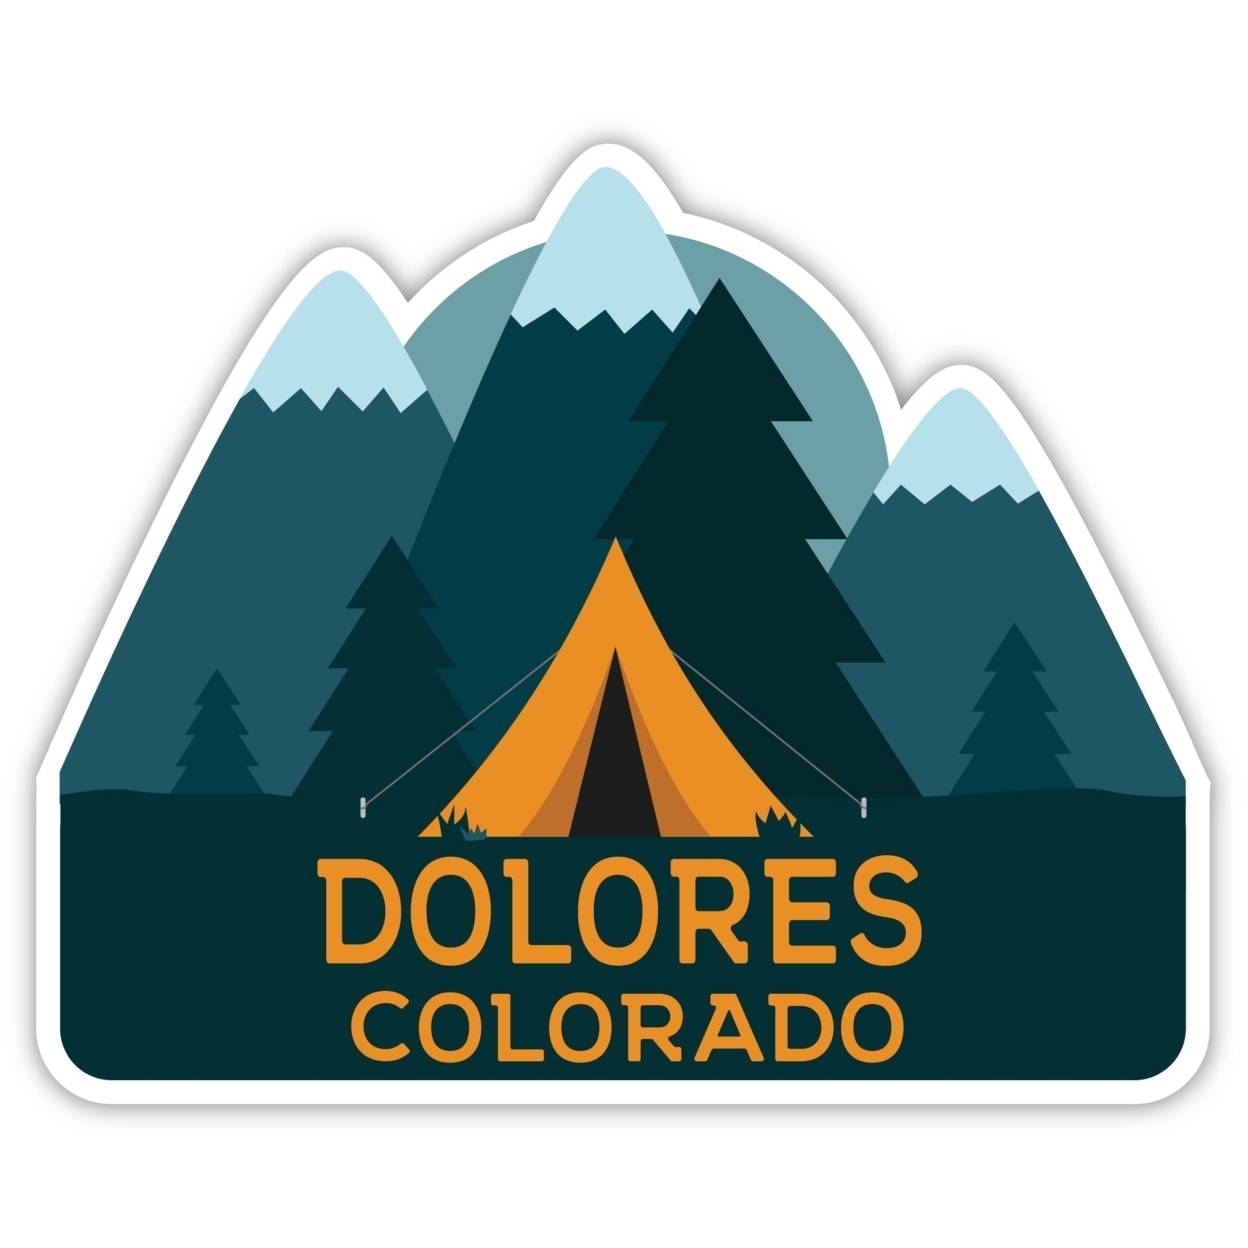 Dolores Colorado Souvenir Decorative Stickers (Choose Theme And Size) - Single Unit, 12-Inch, Tent